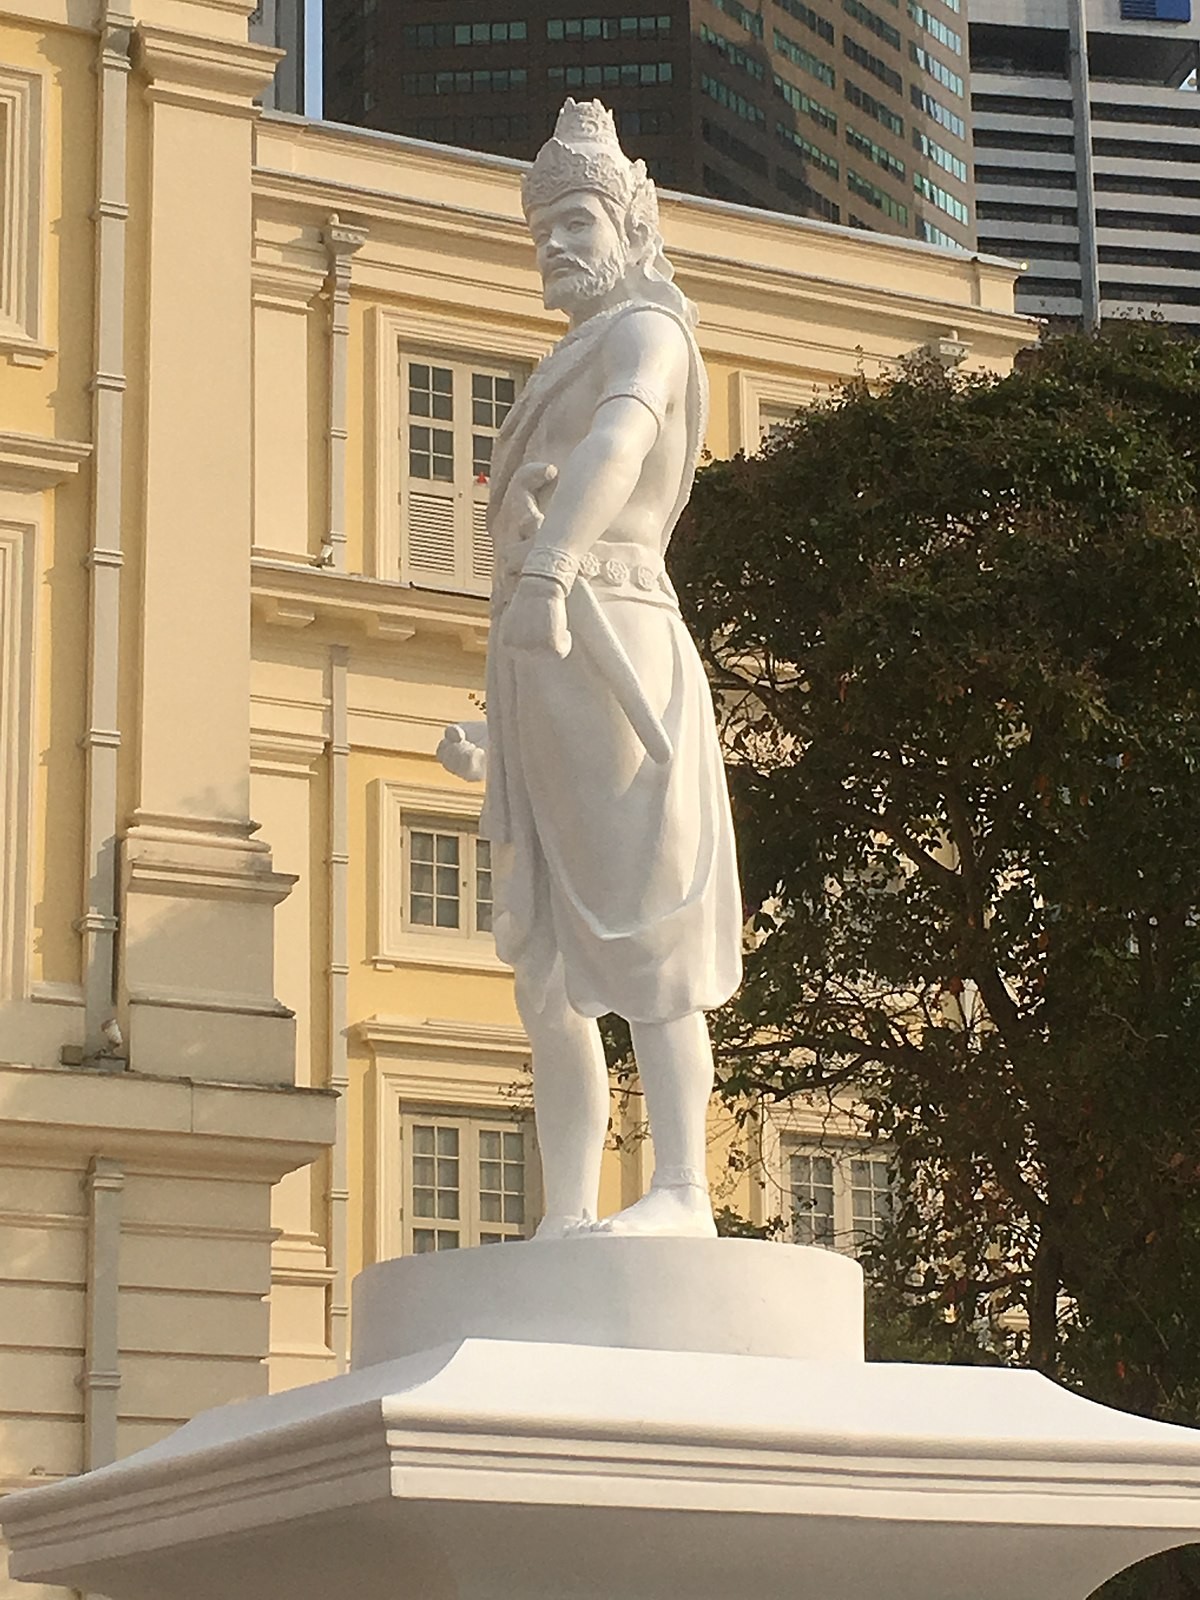 Statue of Sri Tri Buana in Singapore